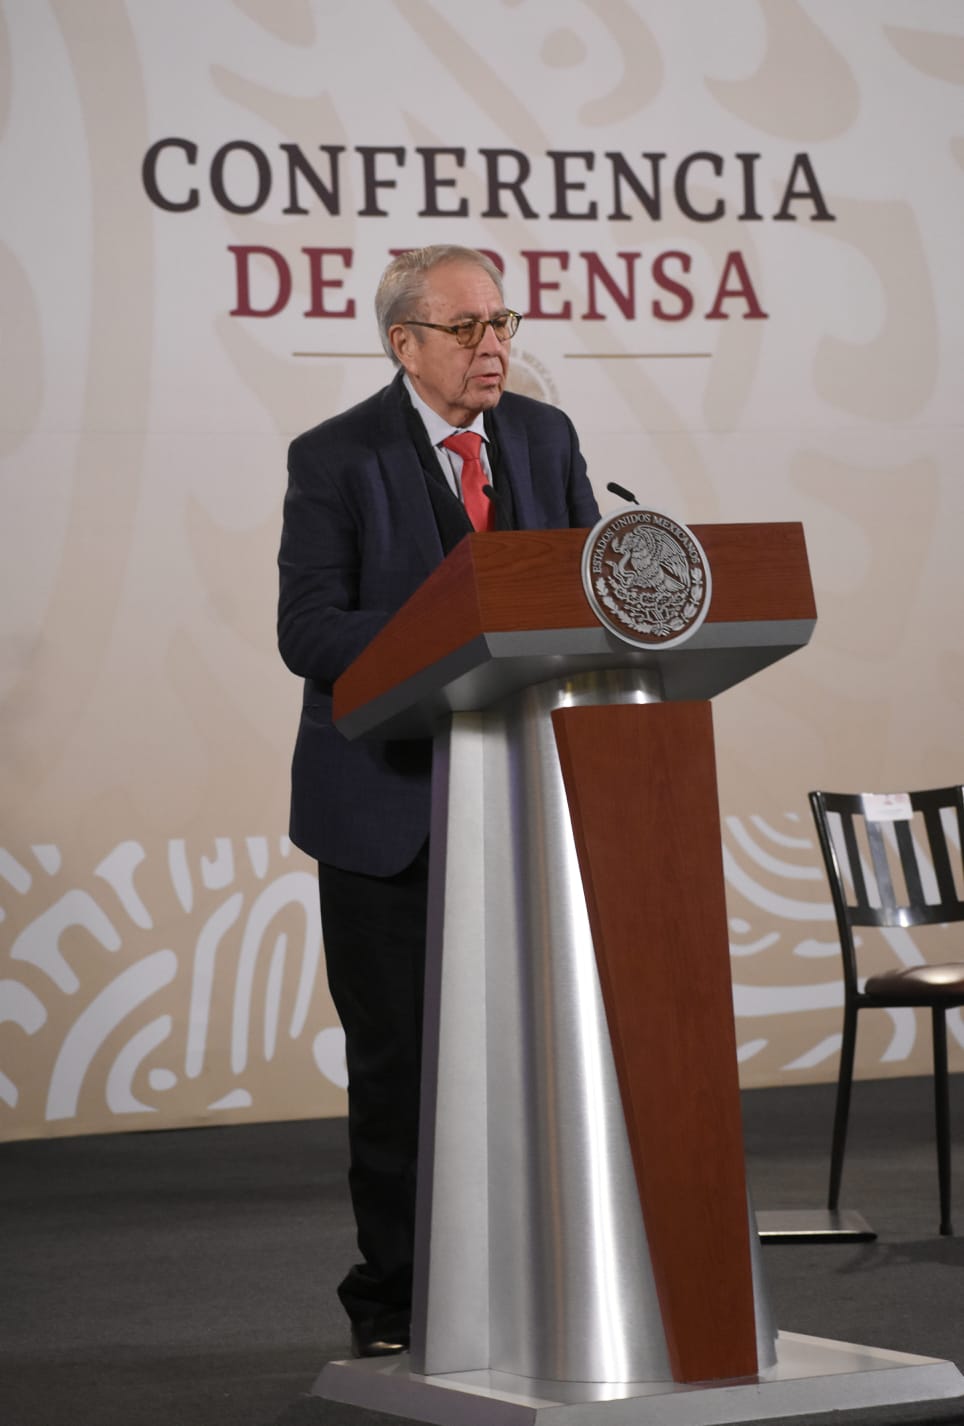 Dr. Jorge Carlos Alcocer Varela